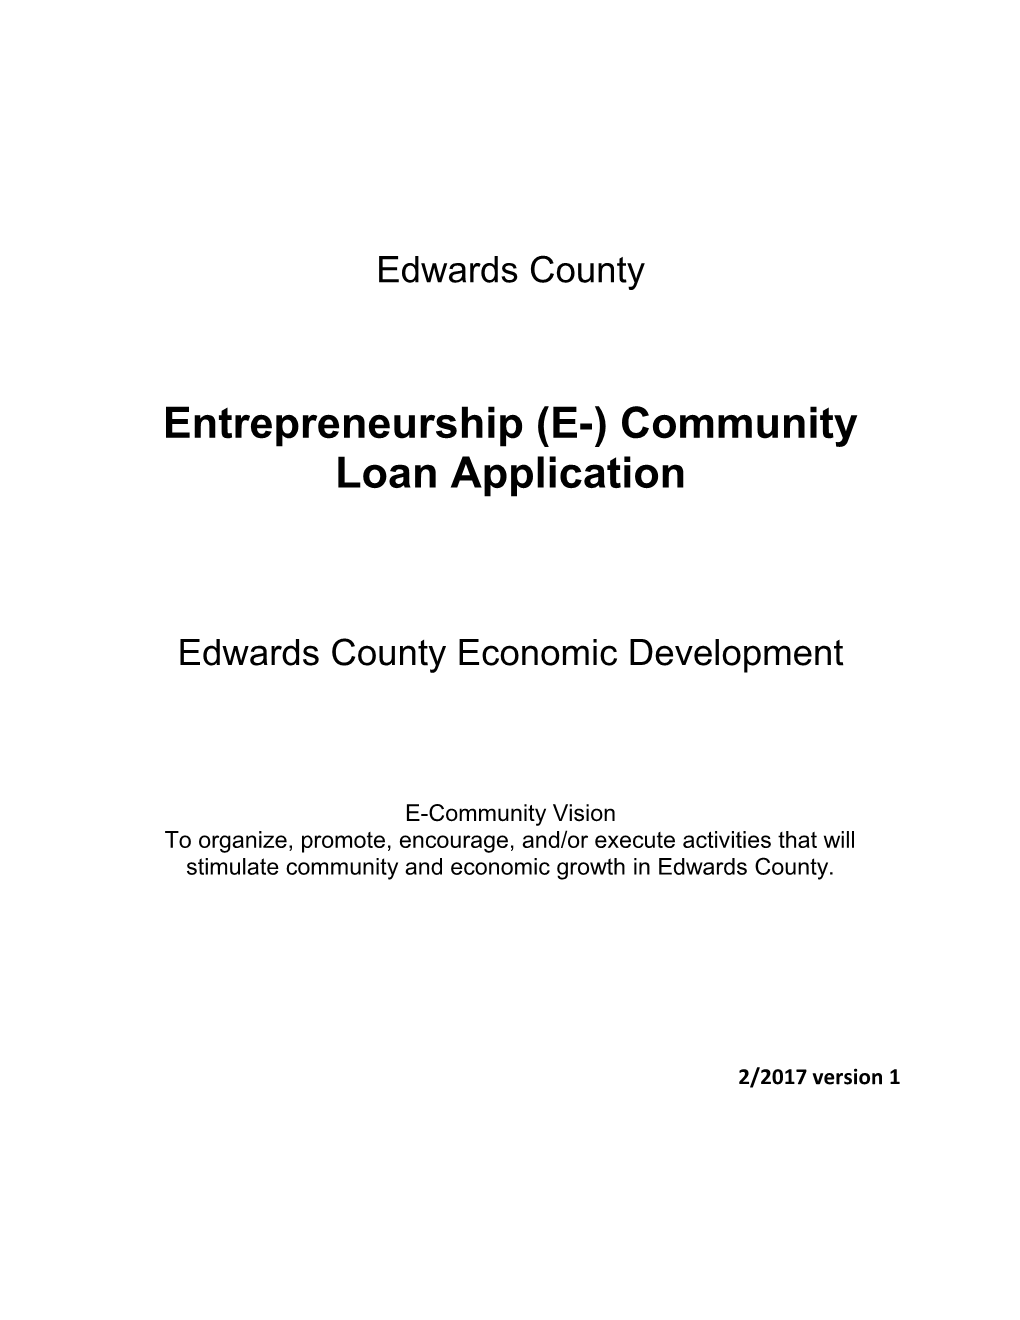 Entrepreneurship (E-) Community Loan Application